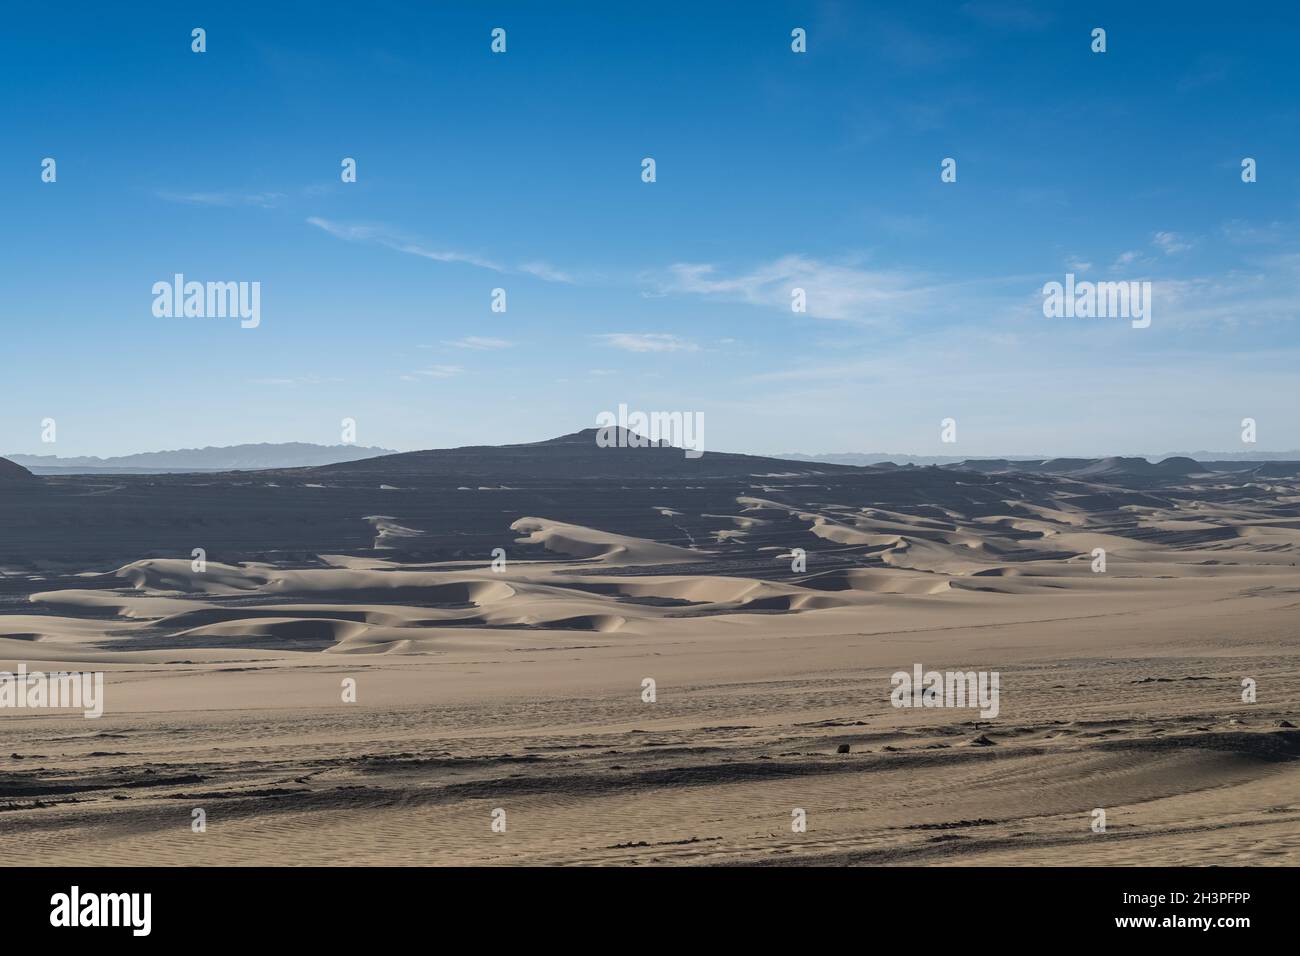 Sandy desertification land landscape Stock Photo